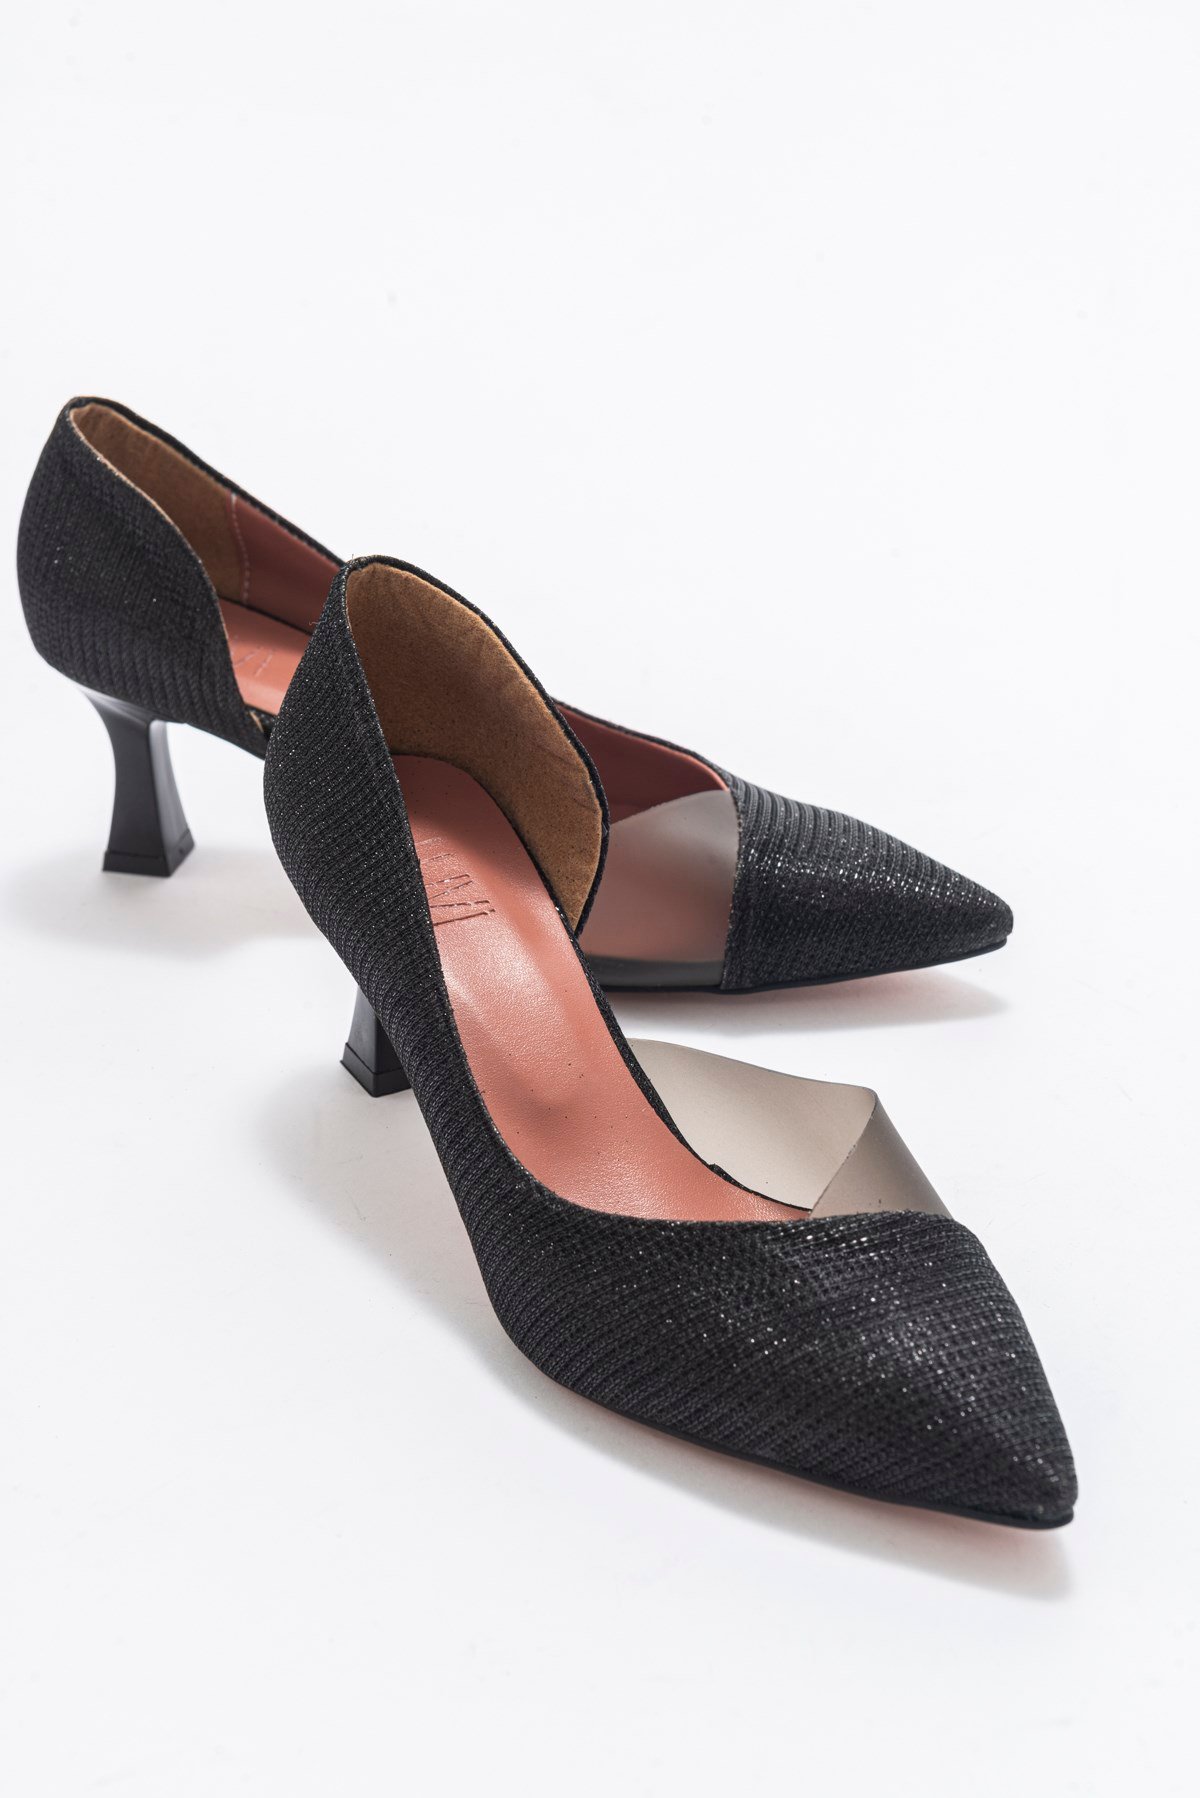 353 Siyah Simli Topuklu Kadın Ayakkabı